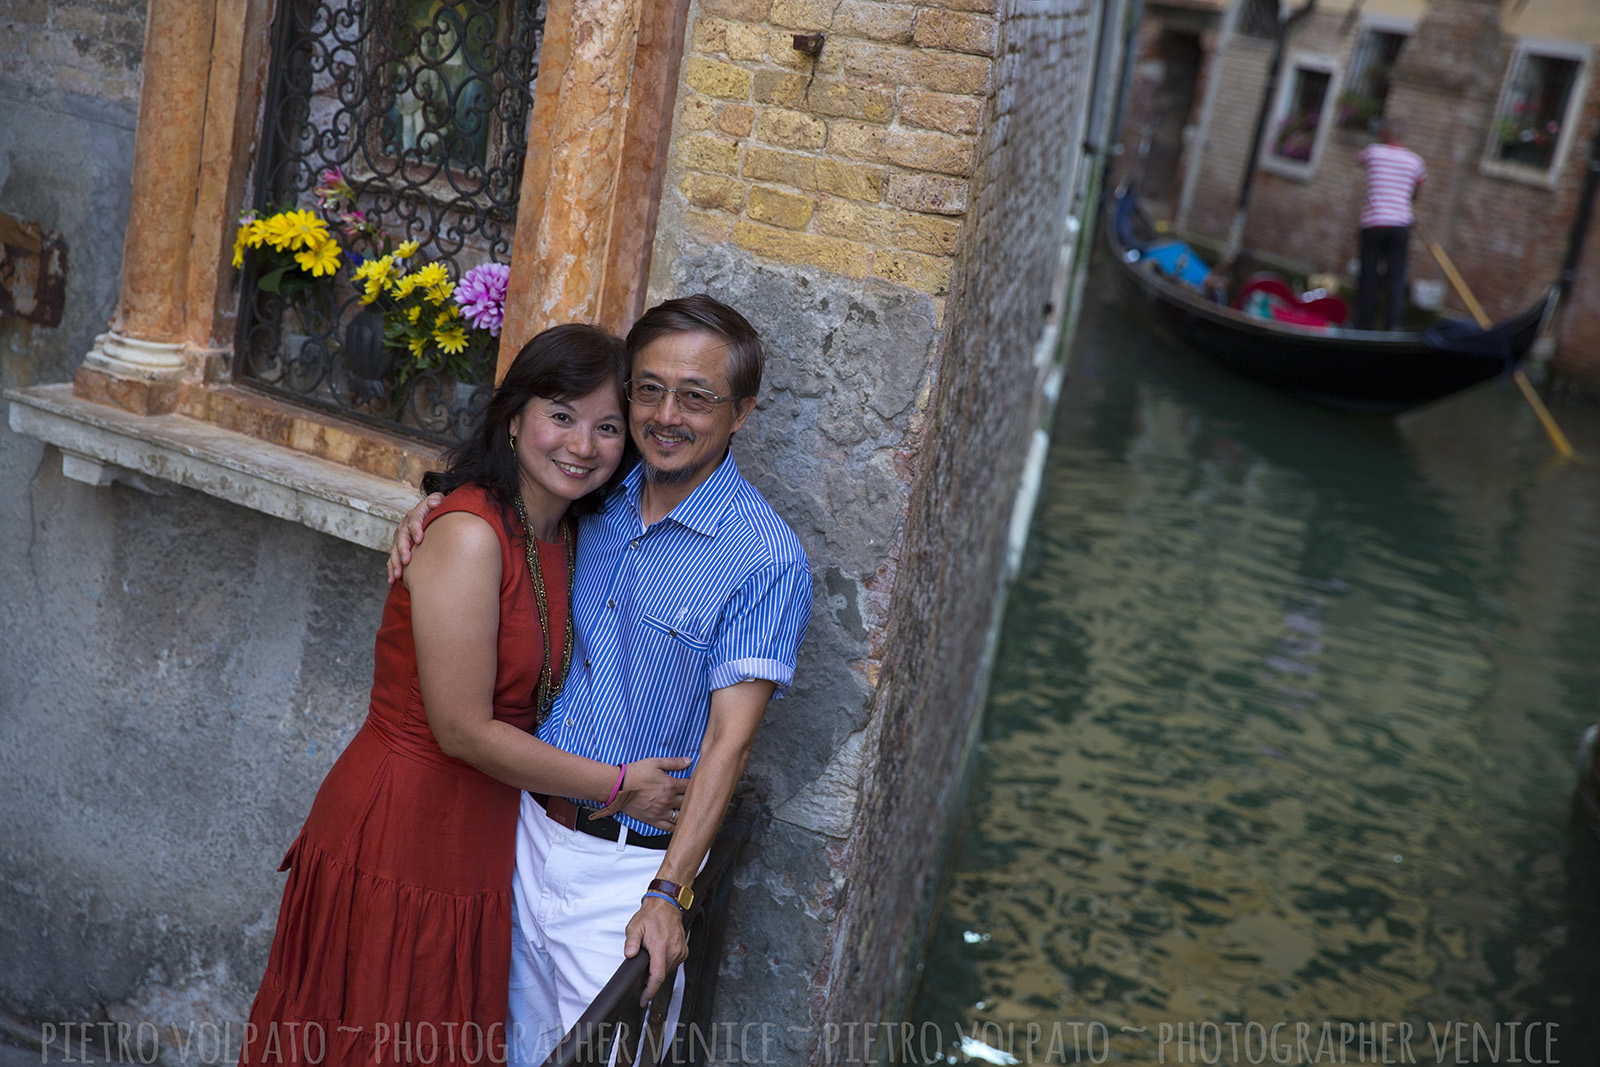 Venezia Fotografo per servizio fotografico durante una passeggiata per una coppia in vacanza ~ Fotografo Venezia servizio foto vacanza